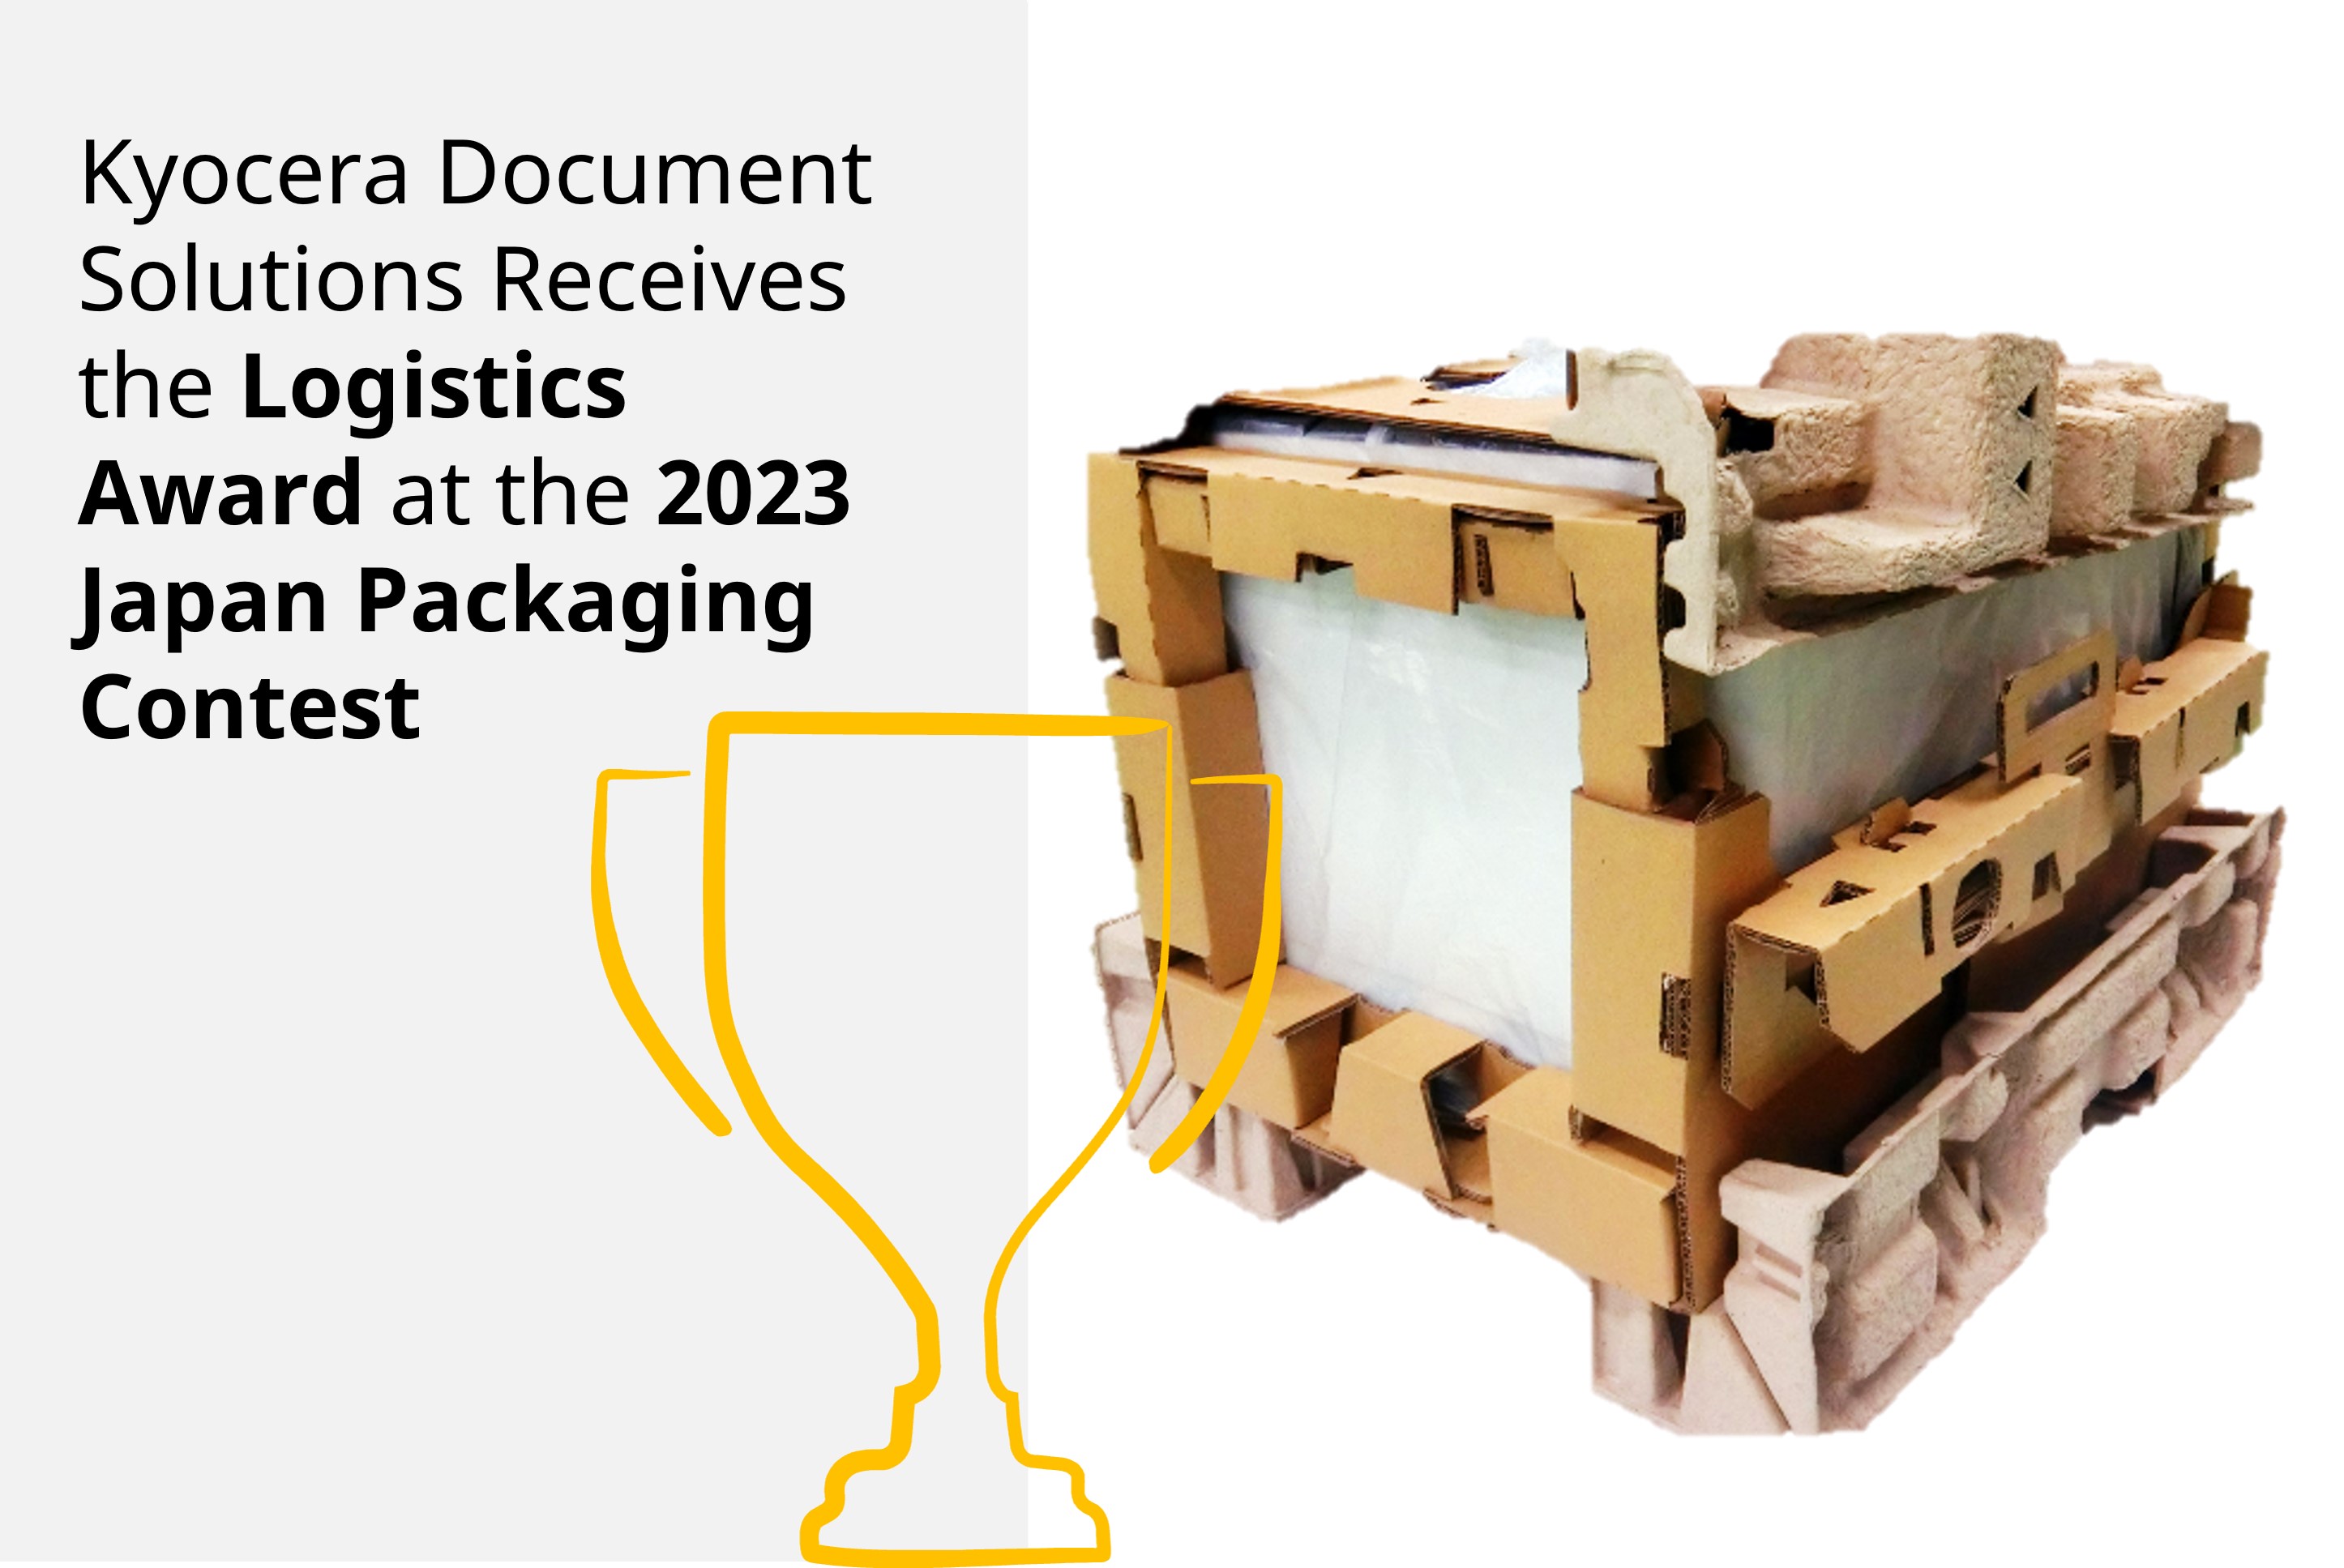 京瓷辦公信息系統榮獲2023年日本包裝大賽「物流獎」